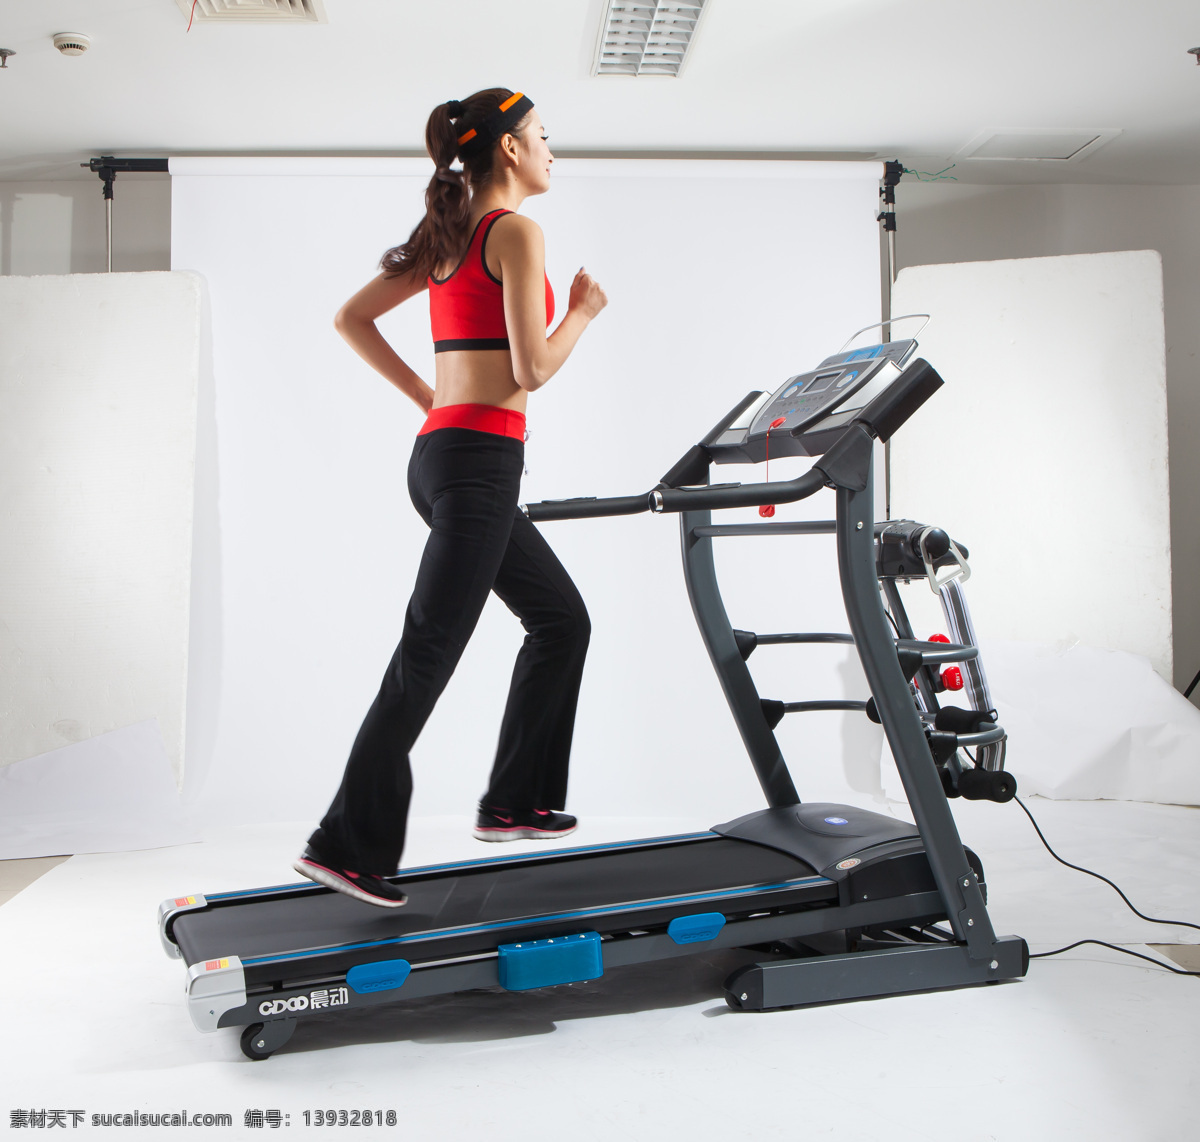 跑步健身运动 跑步机 健身车 健身房 健身器材 运动 健身 体育 电动跑步机 体育用品 健身运动 数码家电 生活百科